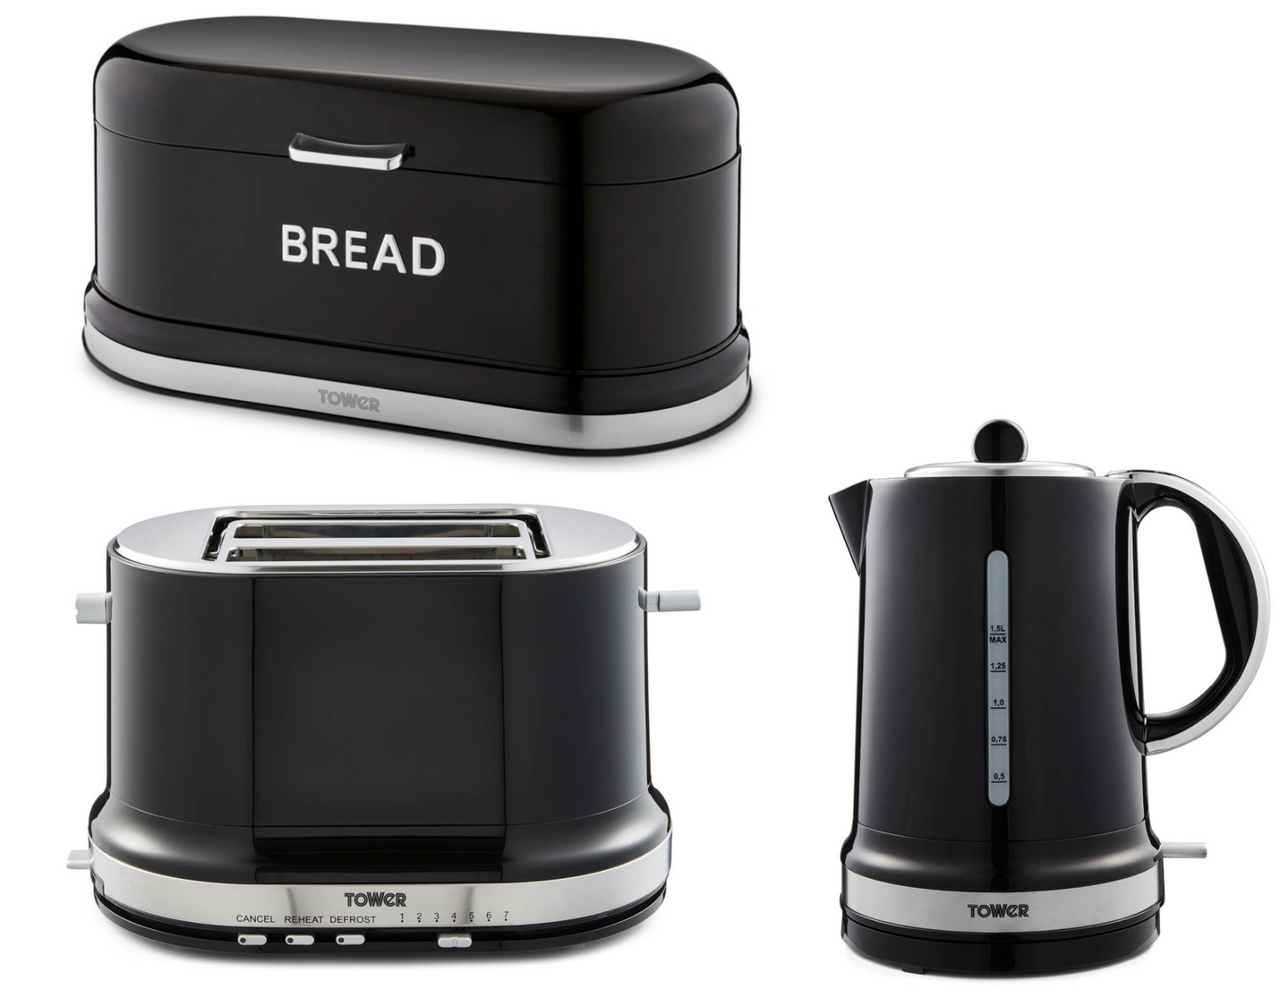 Tower Belle Noir Kettle 2 Slice Toaster & Bread bin Kitchen Set in Black